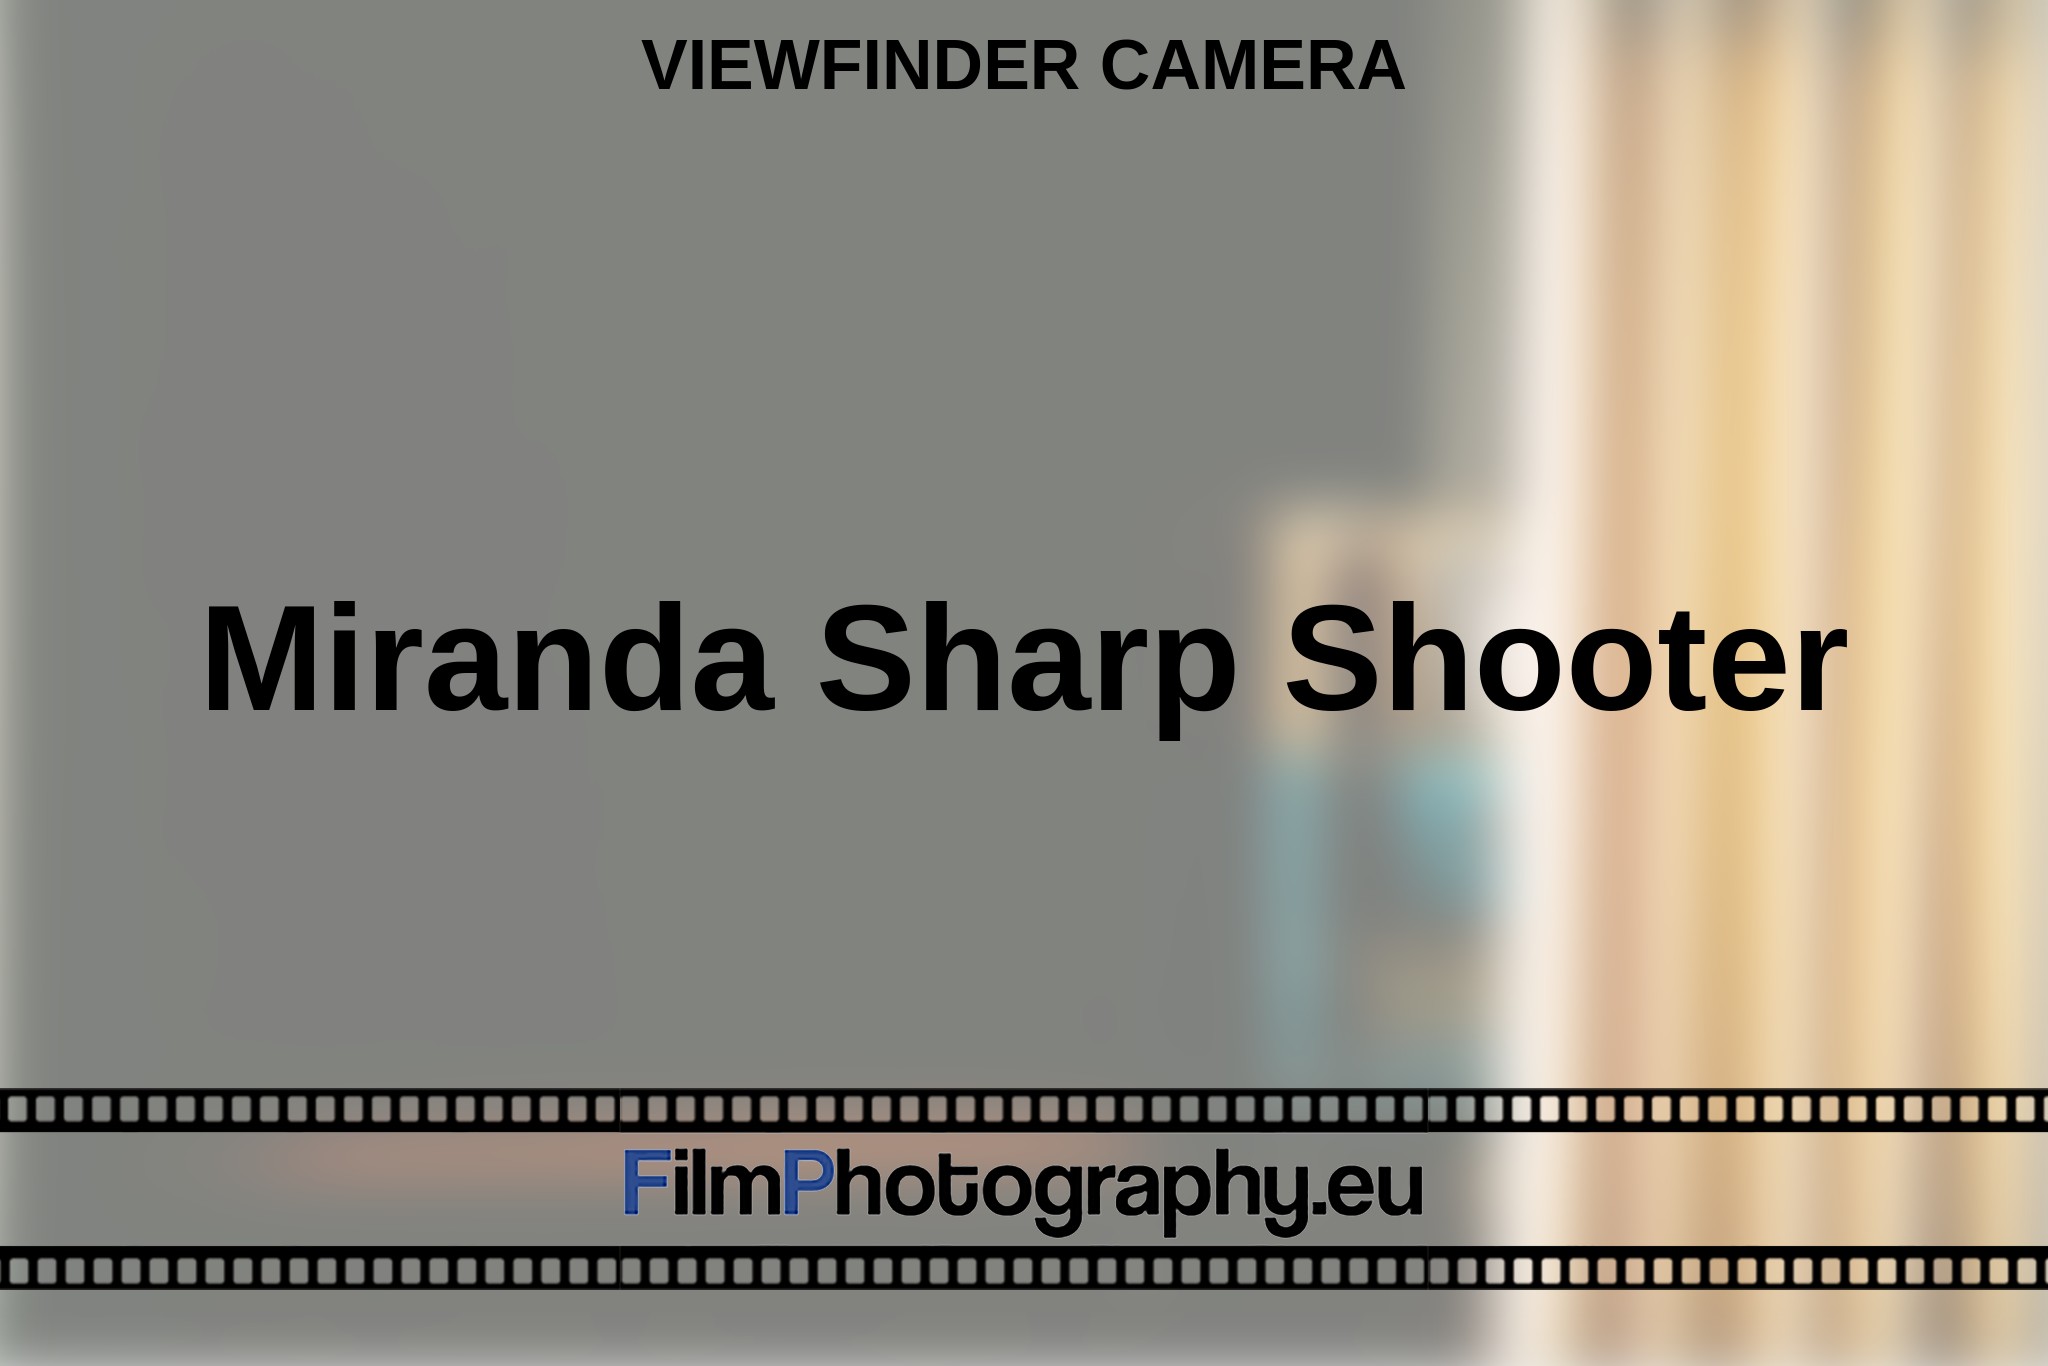 miranda-sharp-shooter-viewfinder-camera-en-bnv.jpg